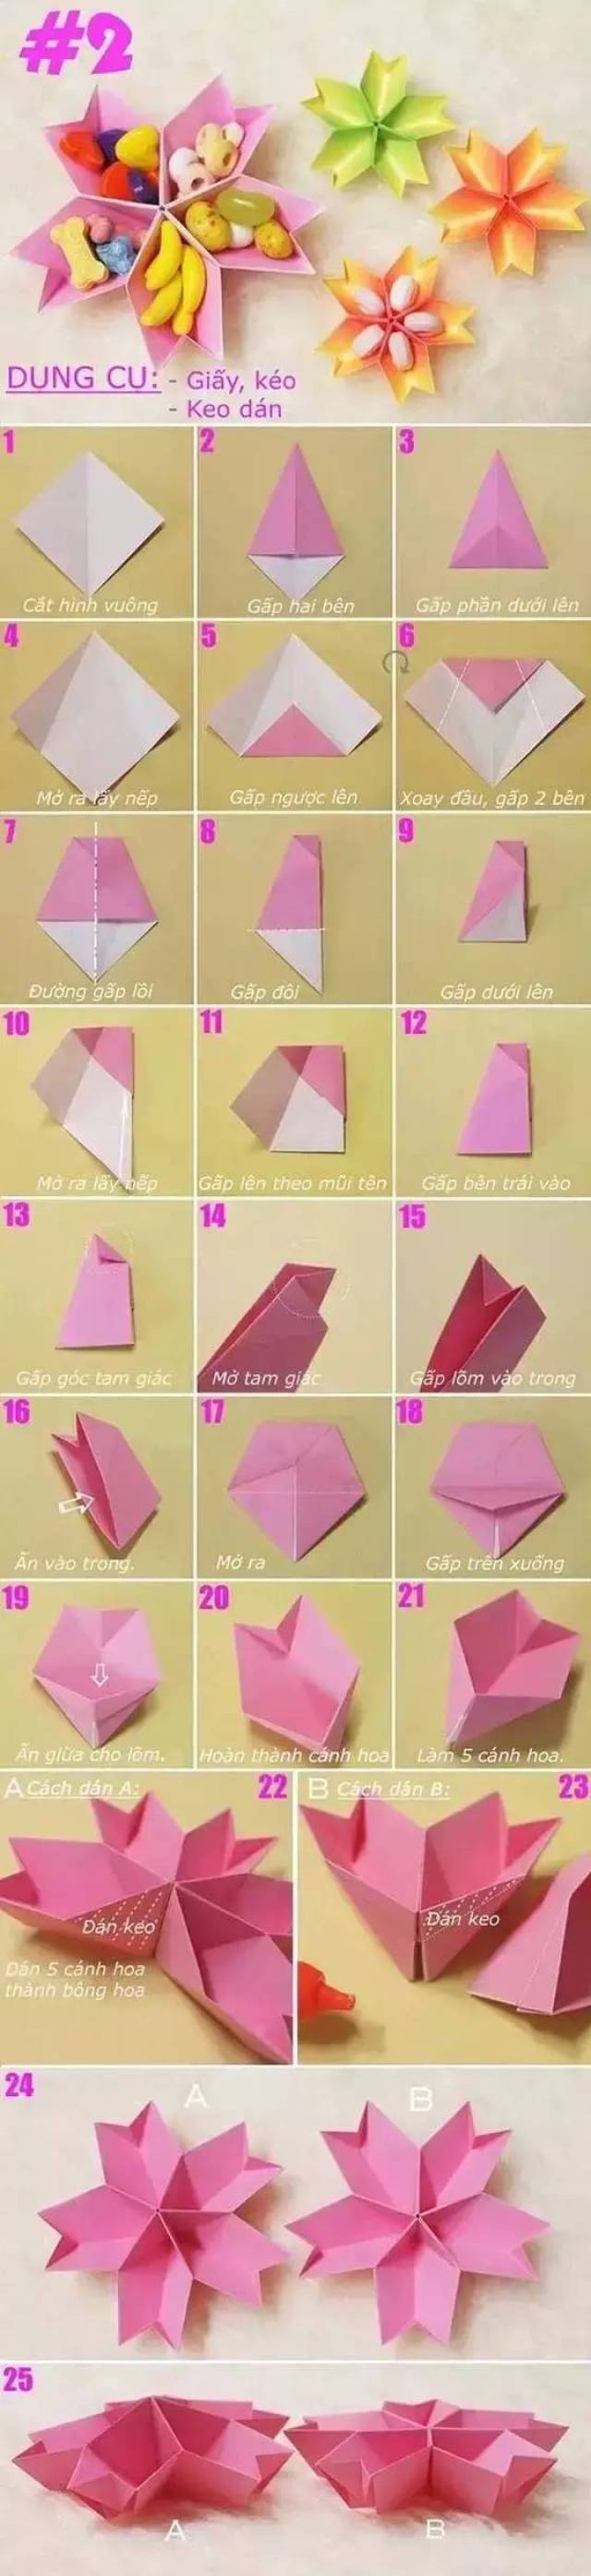 几十款简单,漂亮的幼儿园手工折教程!折纸手工就这么教孩子!